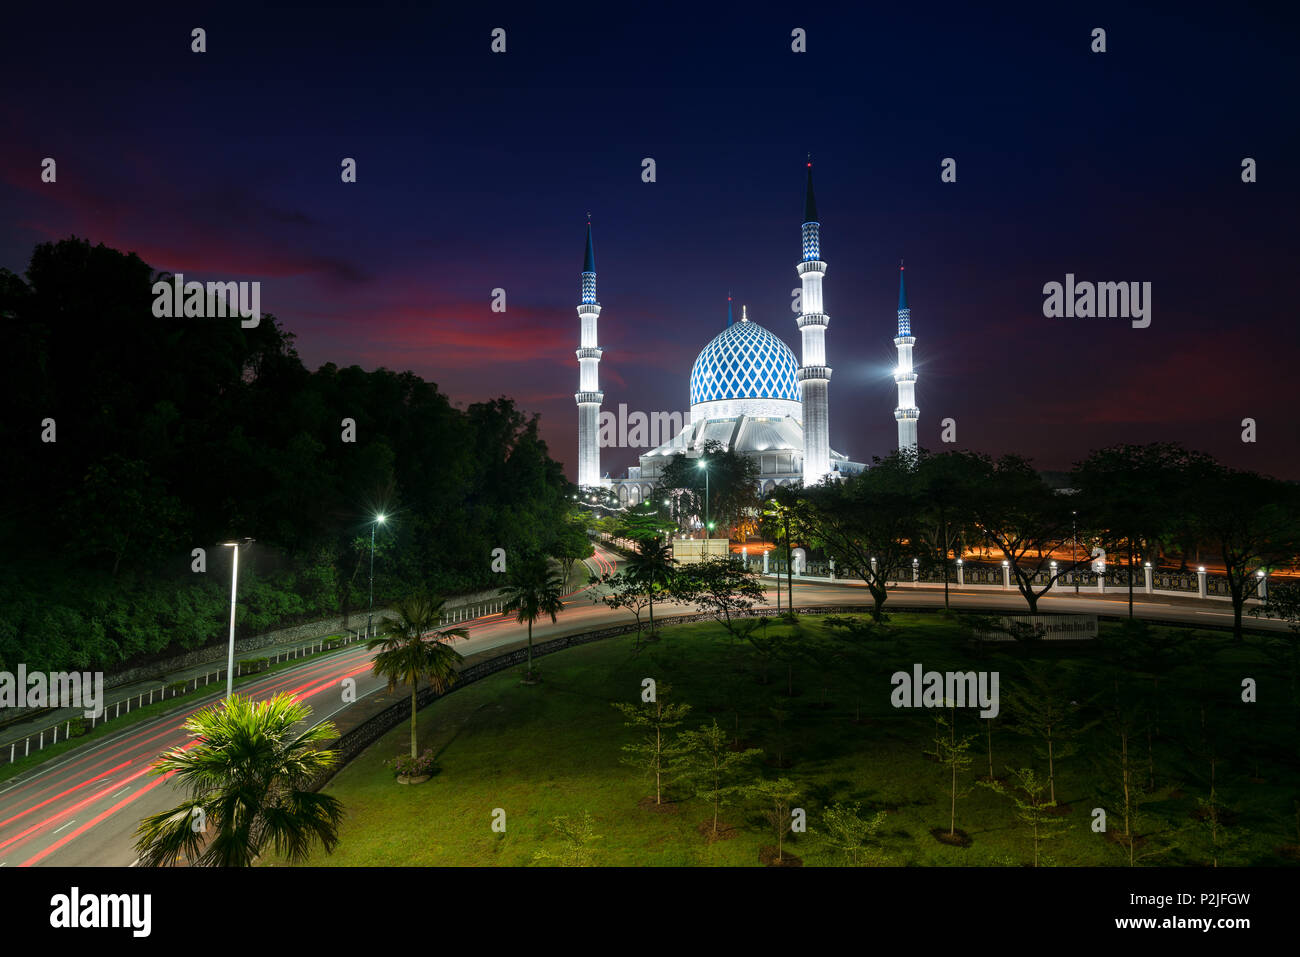 Salahuddin Abdul Aziz Shah Mosquée (aussi connu comme la Mosquée Bleue, la Malaisie) au lever du soleil, situé à Shah Alam, Selangor, Malaisie. Banque D'Images